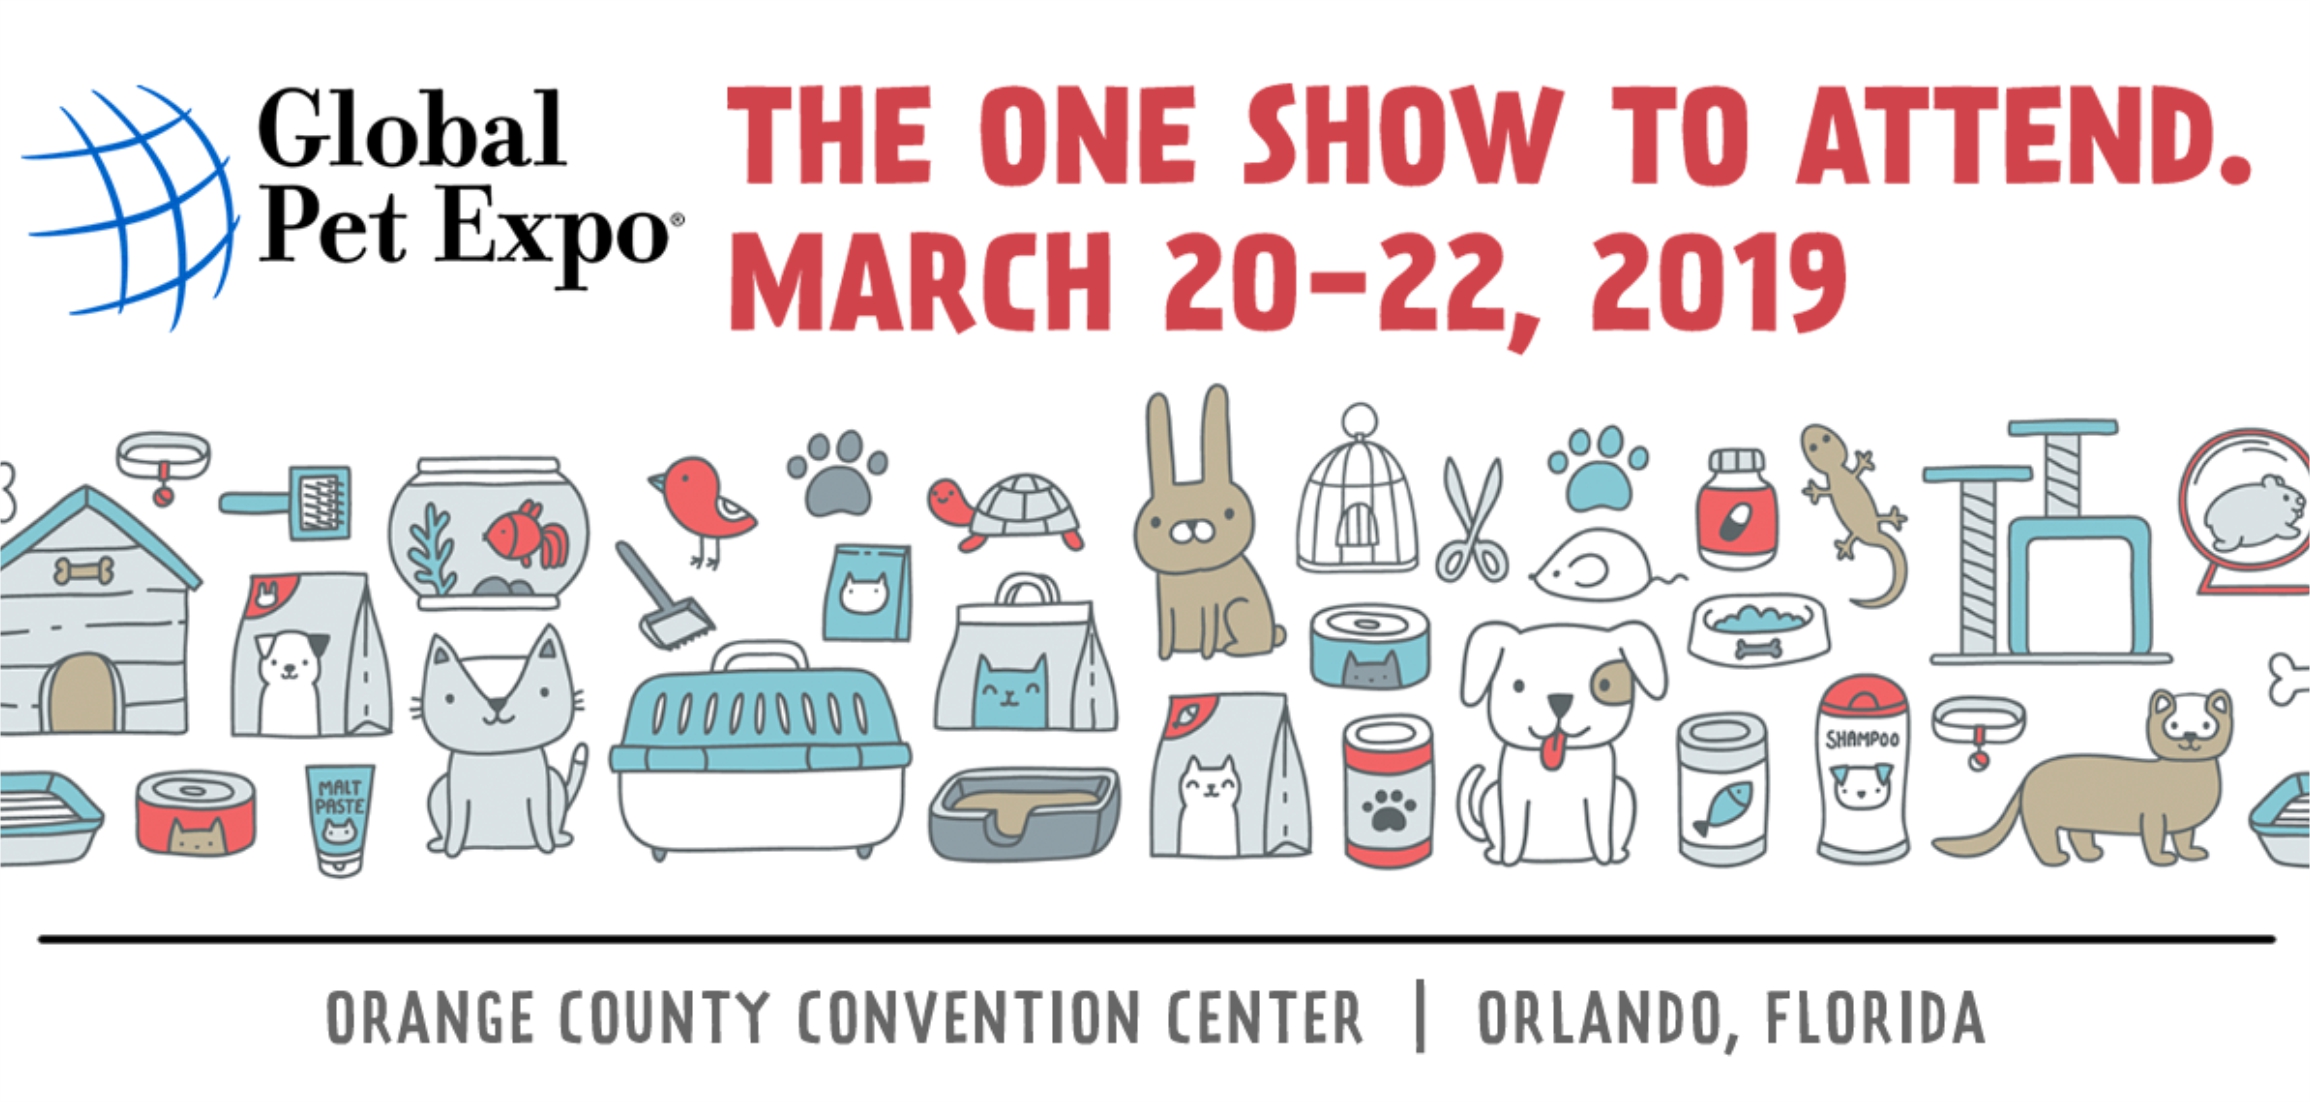 Perigot participa da feira Global Pet Expo em Orlando